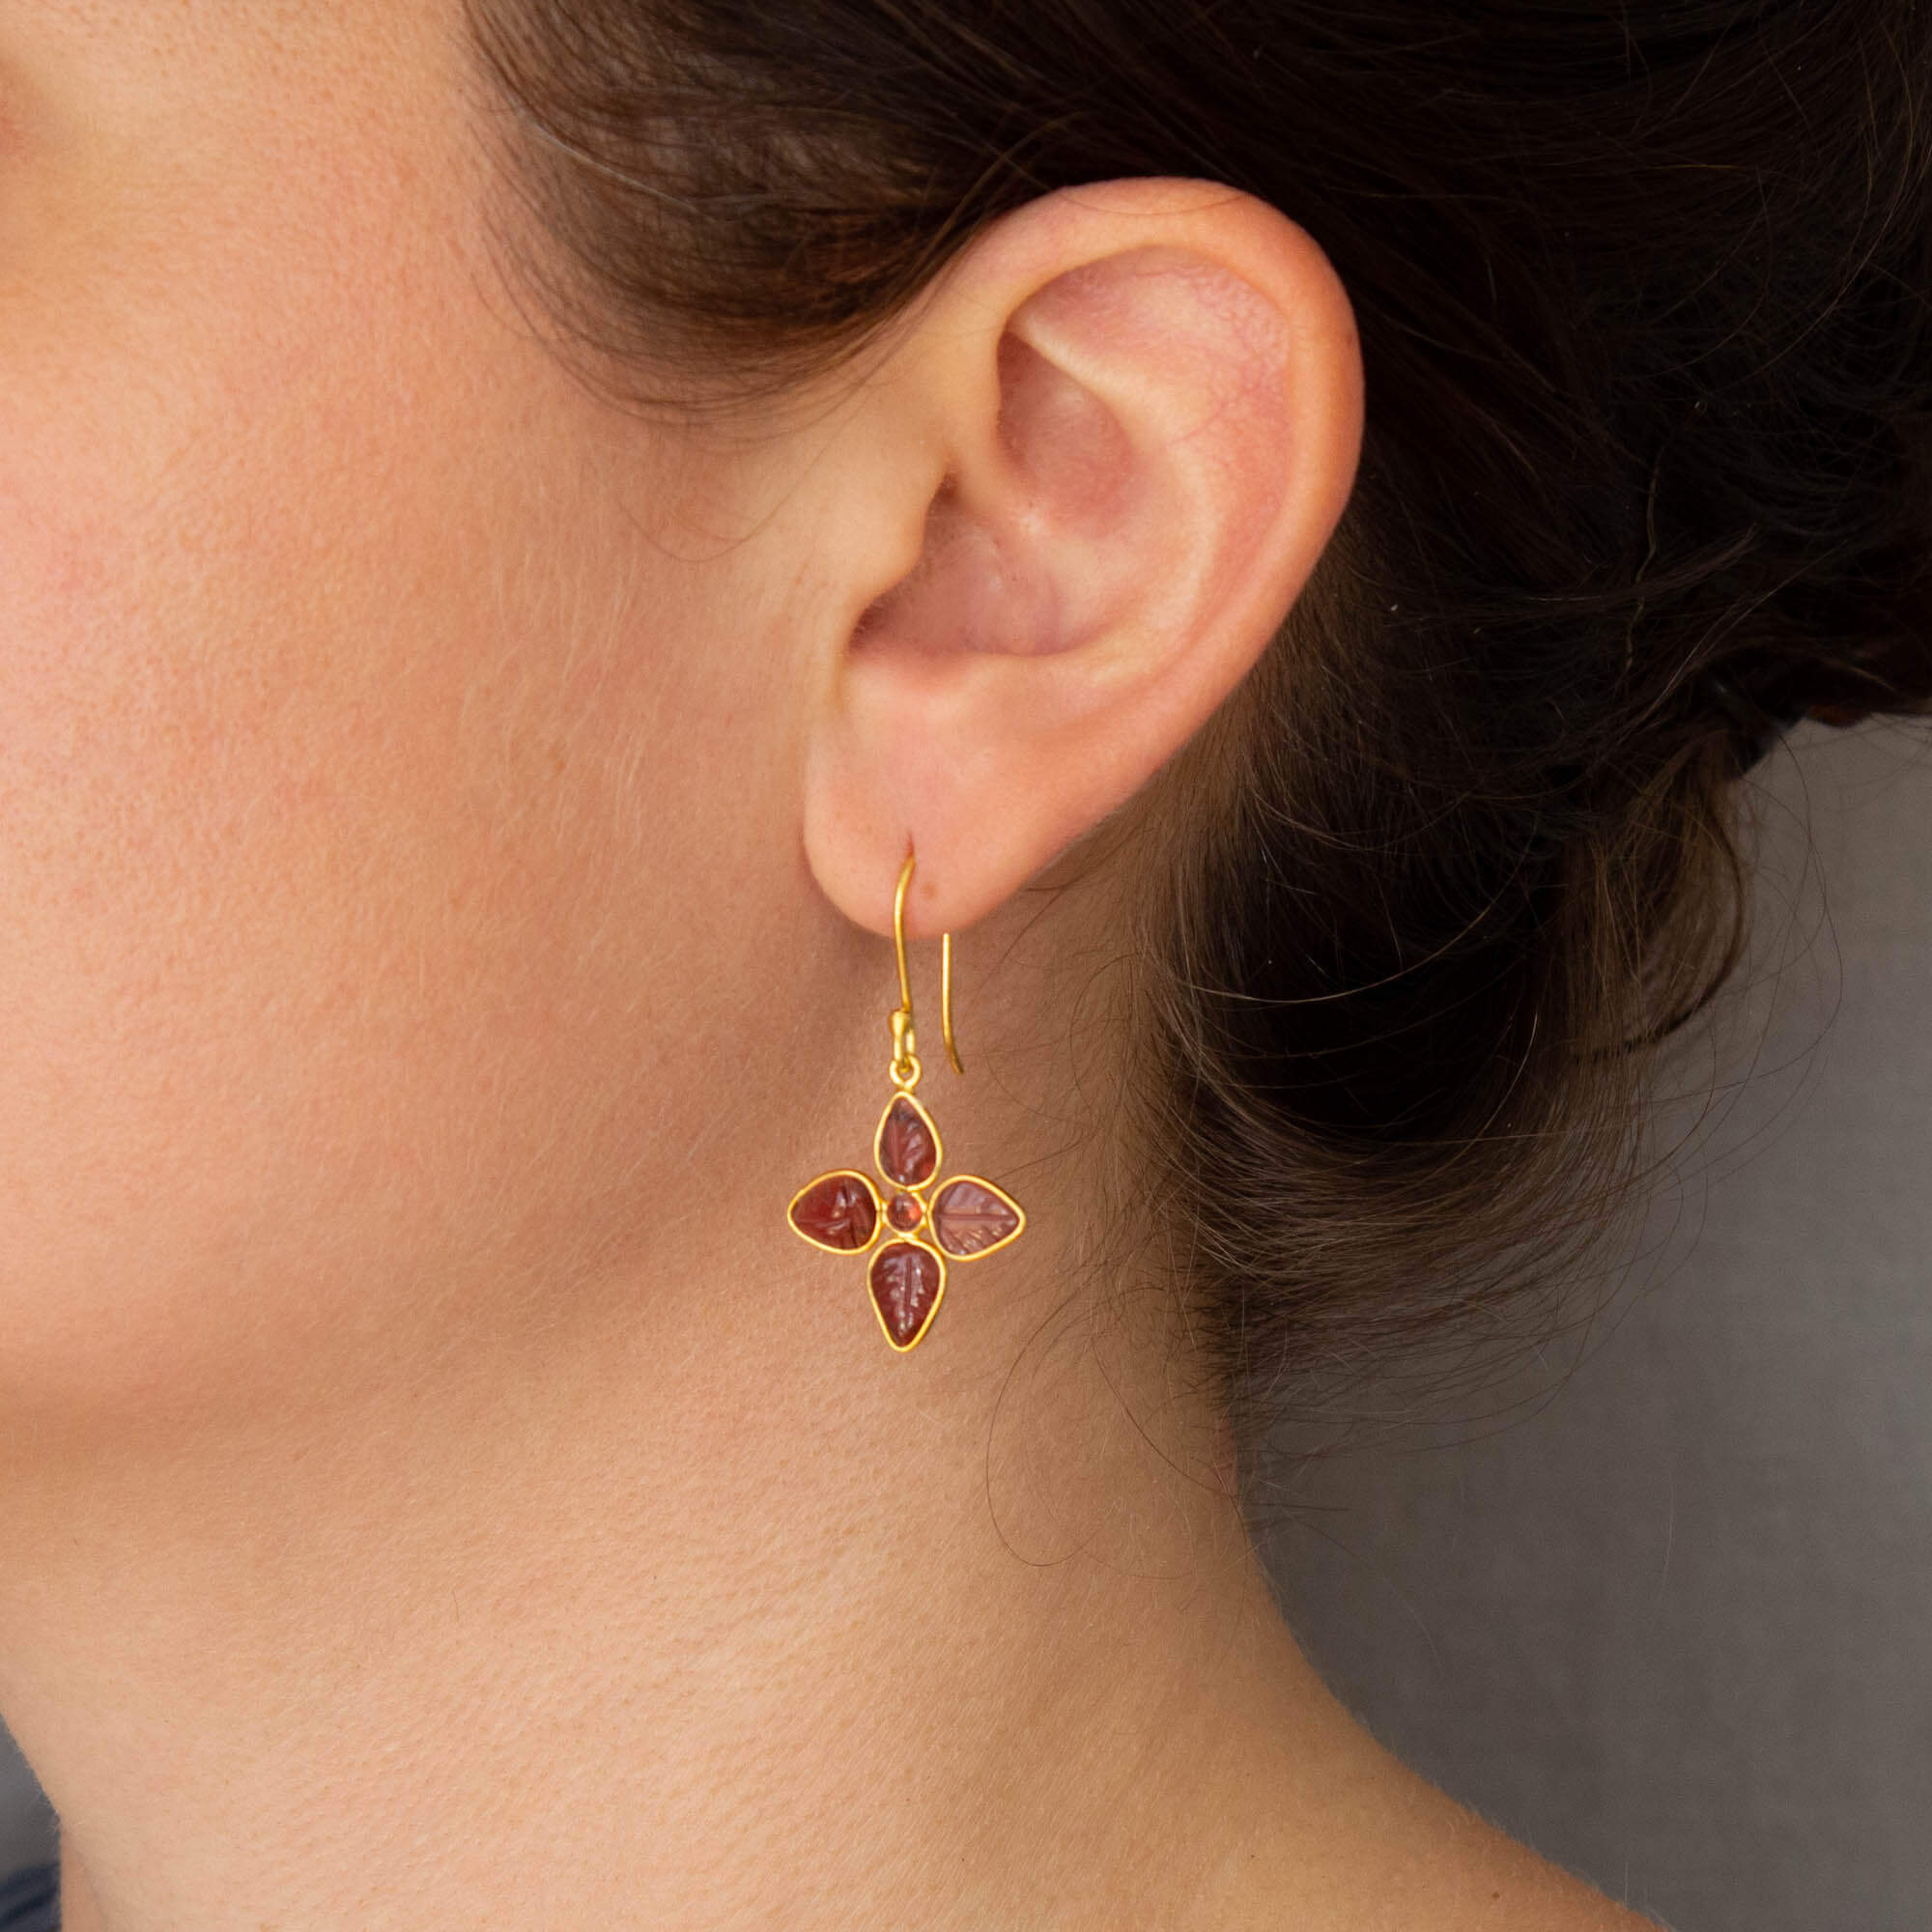 Carved garnet gemstone flower earrings in 18k gold vermeil - Beyond Biasa